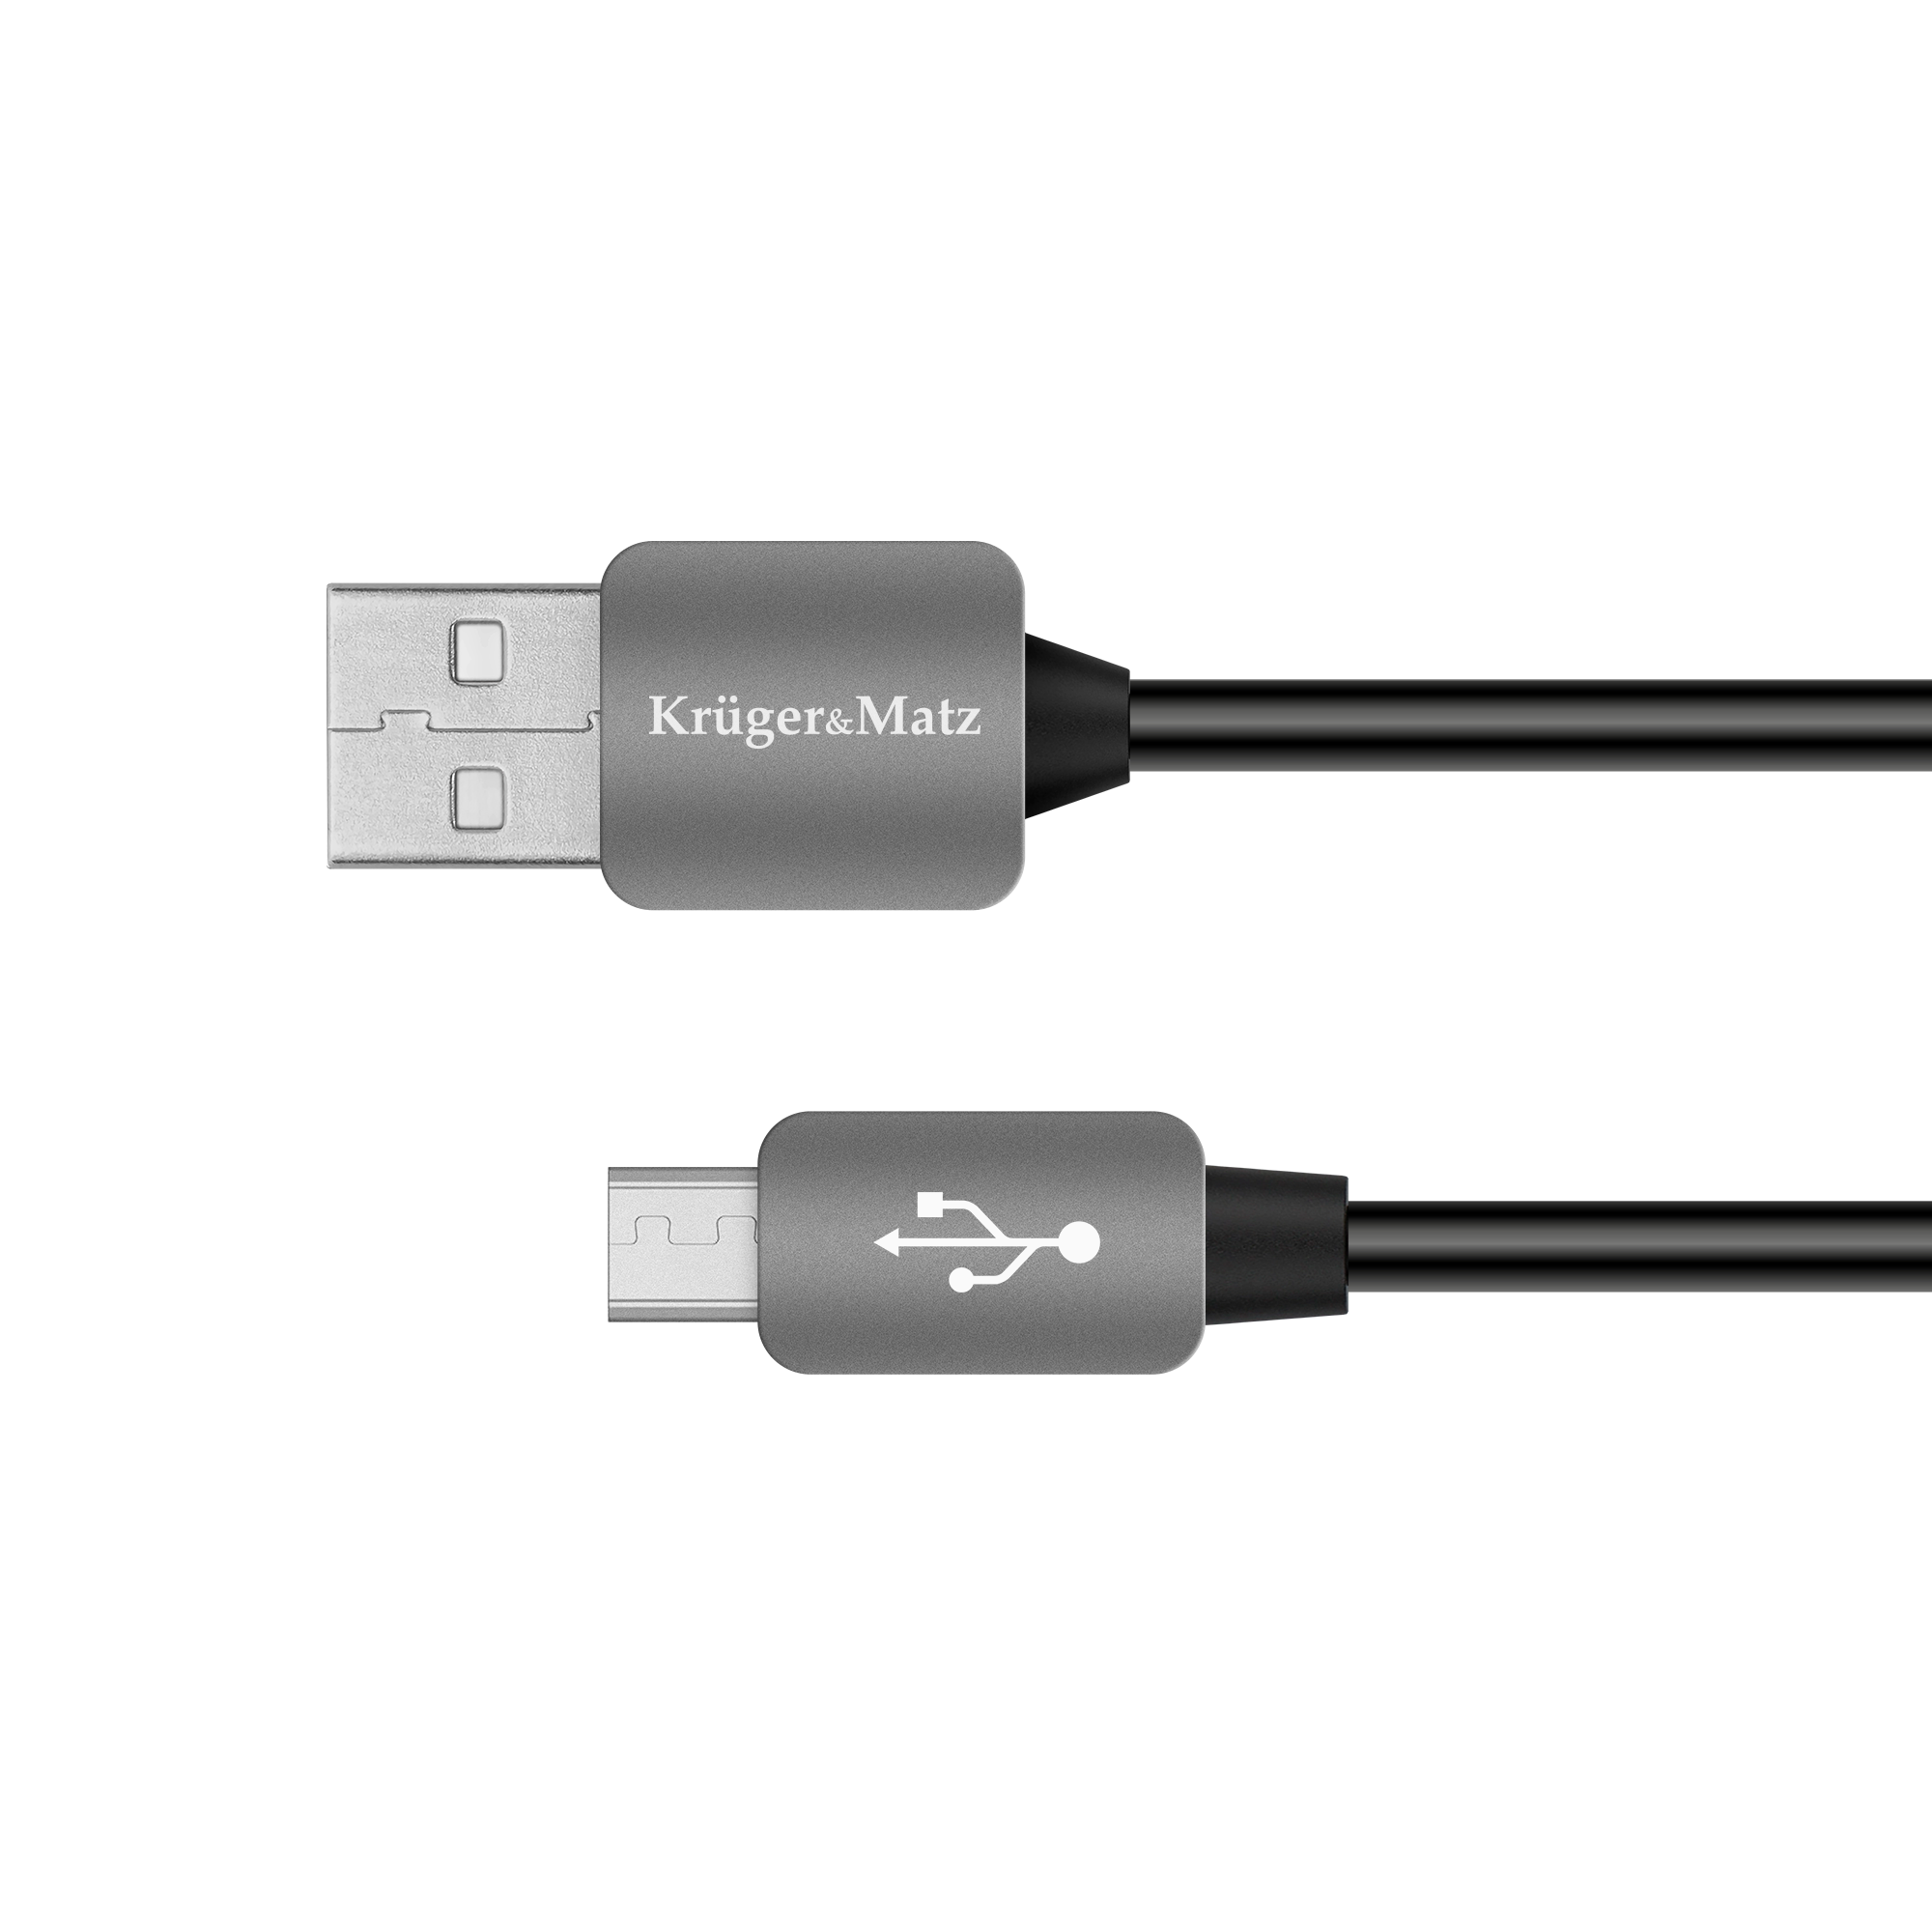 LEC-KM0331--Wysoka jakość tworzyw, z jakich powstają kable USB marki Kruger&amp;amp;Matz sprawiają, że są one bardzo trwałe. Żyły gł&amp;oacute;wne wykonane z czystej miedzi zapewnią wysoką jakość przewodzenia, umożliwiając przesyłanie danych pomiędzy ur